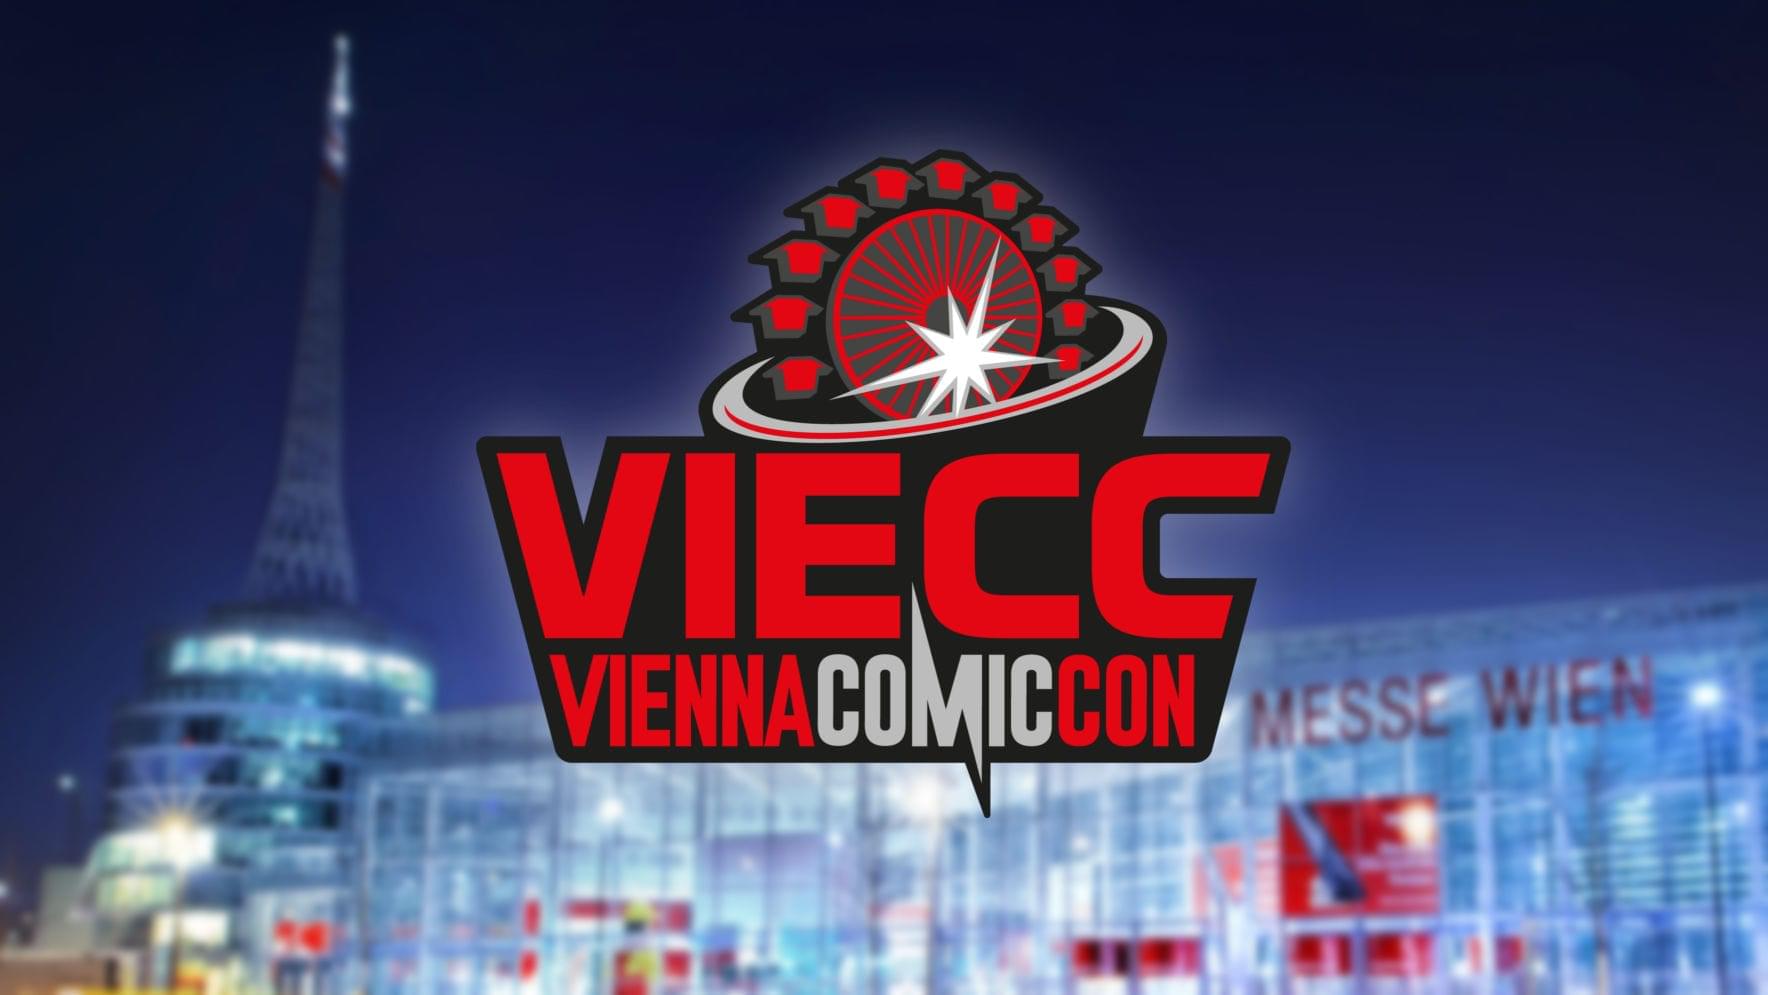 VIECC 2019